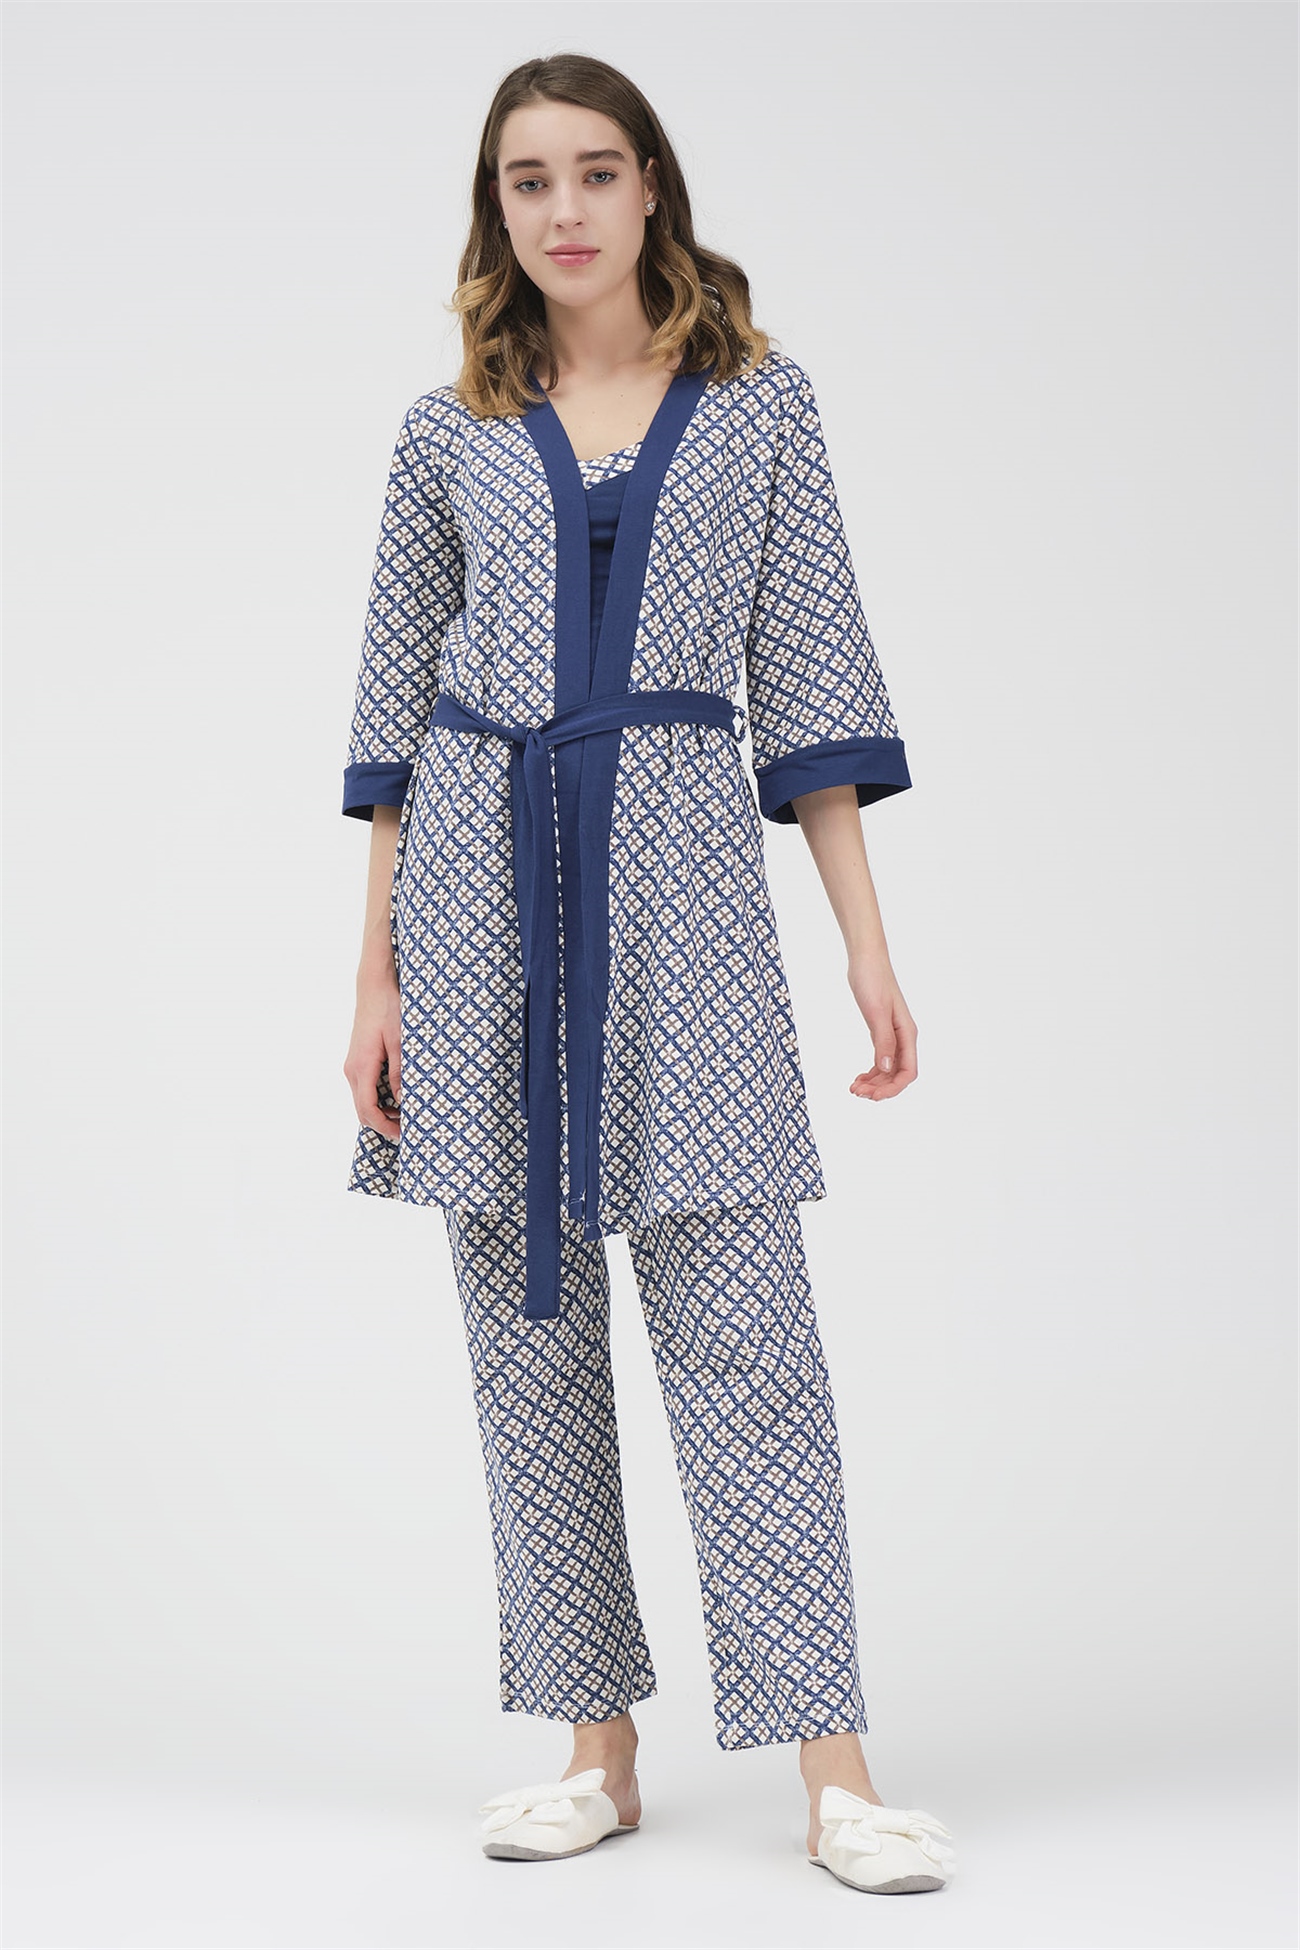 Baykar Desenli Üçlü Pijama Takımı 9492 Lacivert - Baykar